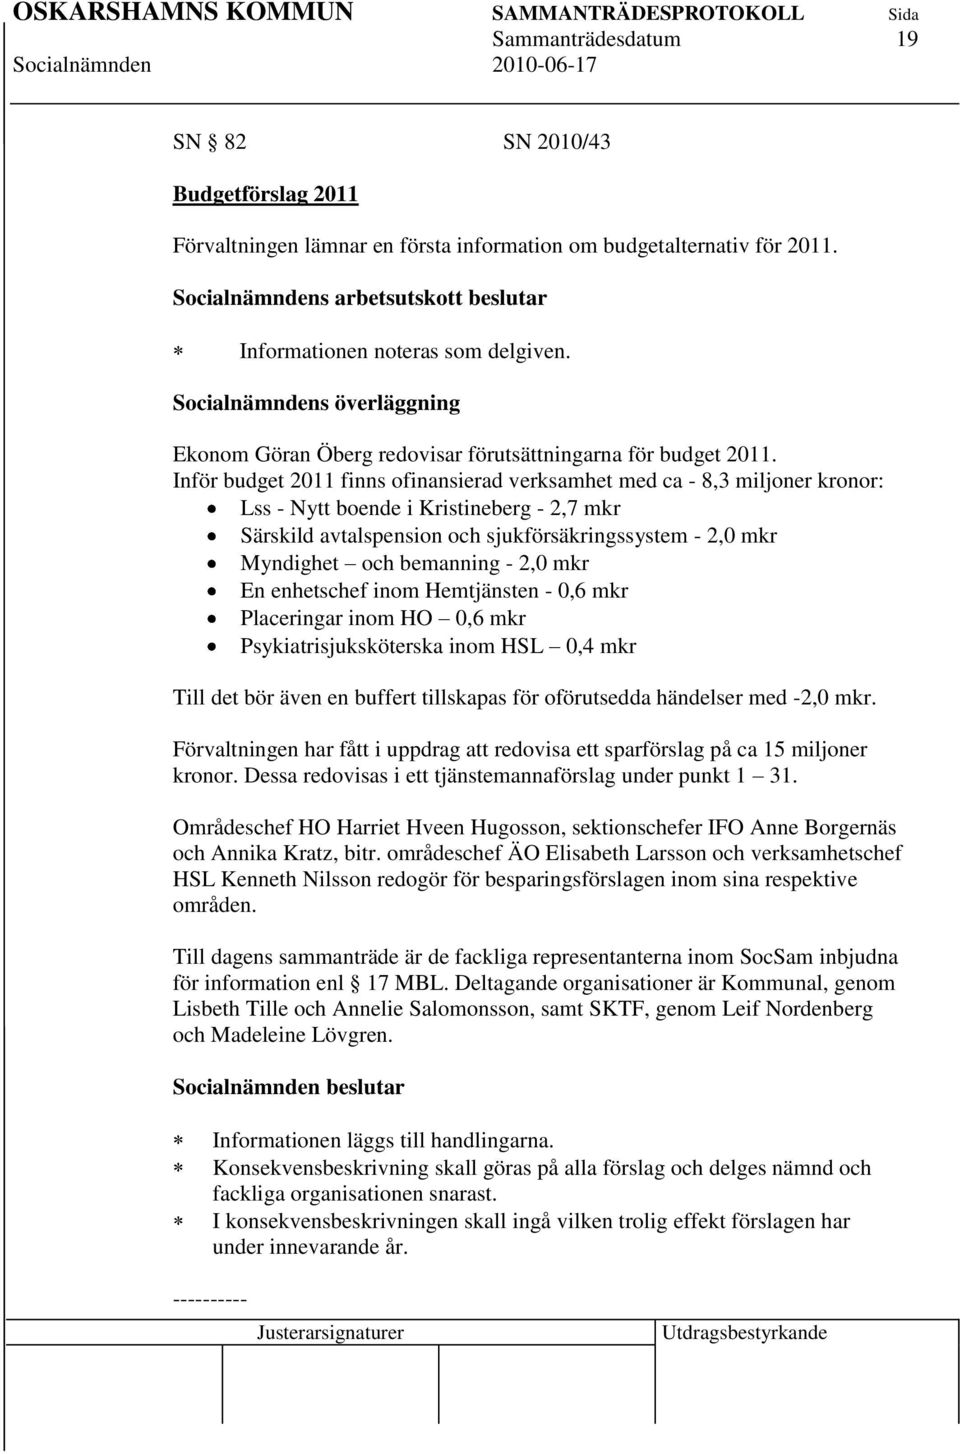 Inför budget 2011 finns ofinansierad verksamhet med ca - 8,3 miljoner kronor: Lss - Nytt boende i Kristineberg - 2,7 mkr Särskild avtalspension och sjukförsäkringssystem - 2,0 mkr Myndighet och